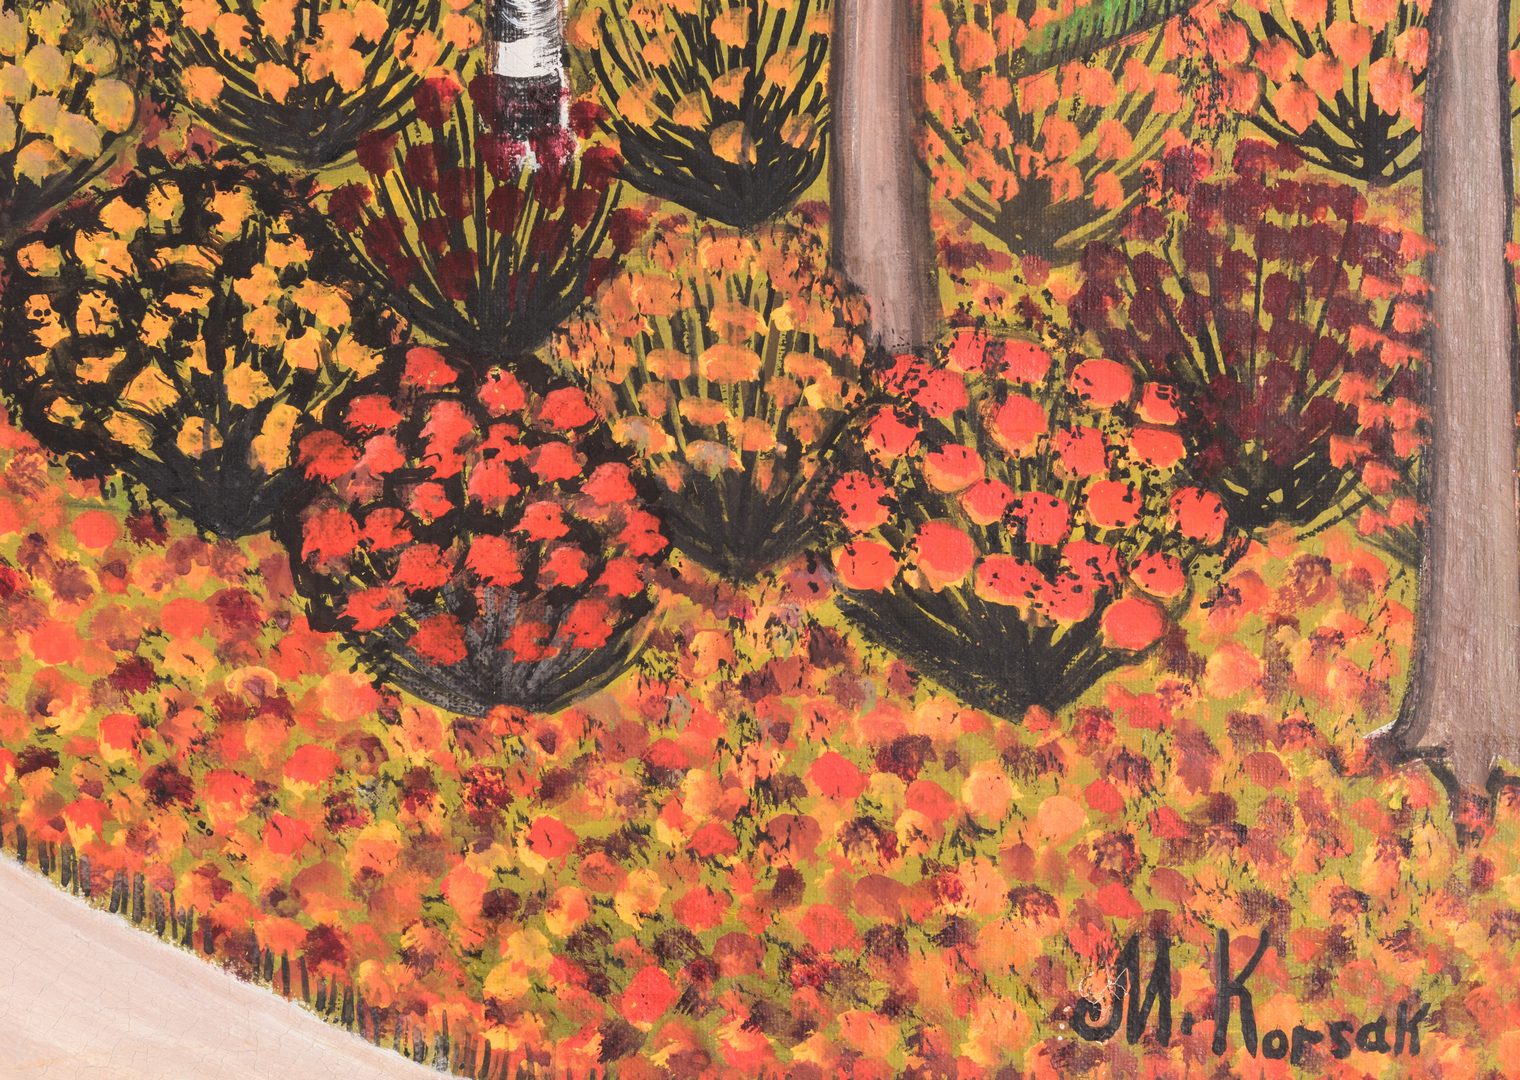 Lot 152: M. Korsak Painting – Autumn Landscape